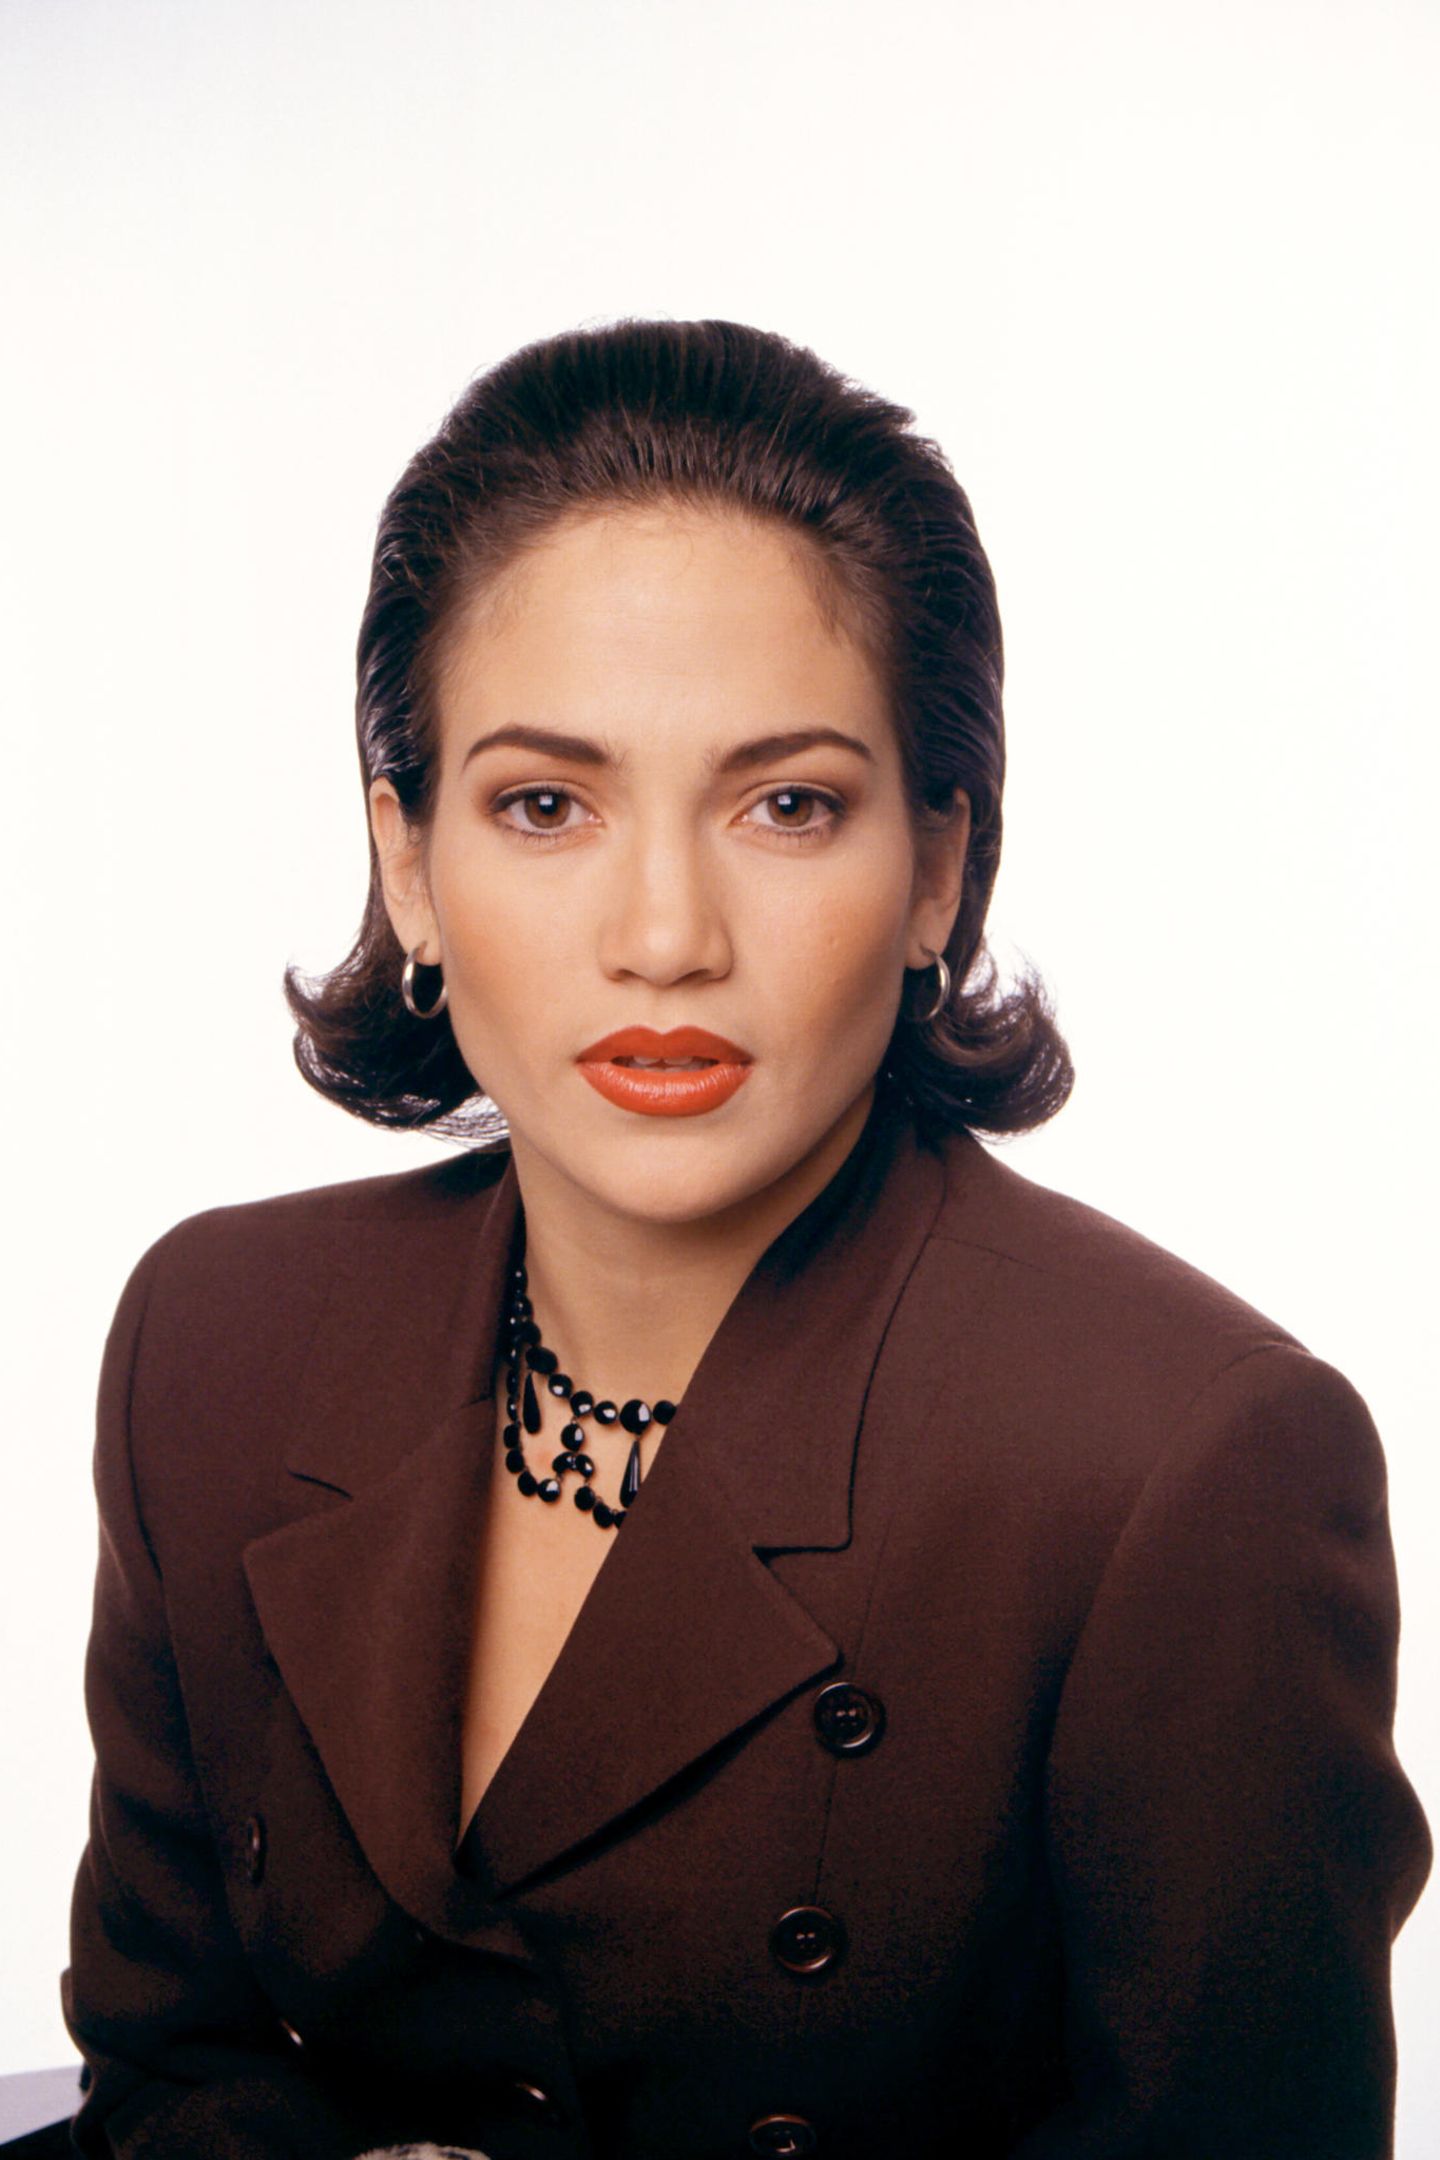 Januar 1992  Mit 23 Jahren ist die Latino-Schönheit noch ein Neuling im Film-Business. Ihr regelmäßiger Auftritt in der erfolgreichen TV-Sitcom "In Living Color" verschafft ihr jedoch neue Rollen. Der Look dabei noch ein schlichter – ihre Haare trägt sie schulterlang, föhnt sie gerne über die Rundbürste und stylt sie aus dem Gesicht. Fesselnd sind die rehbraunen Augen der Puertoricanerin.